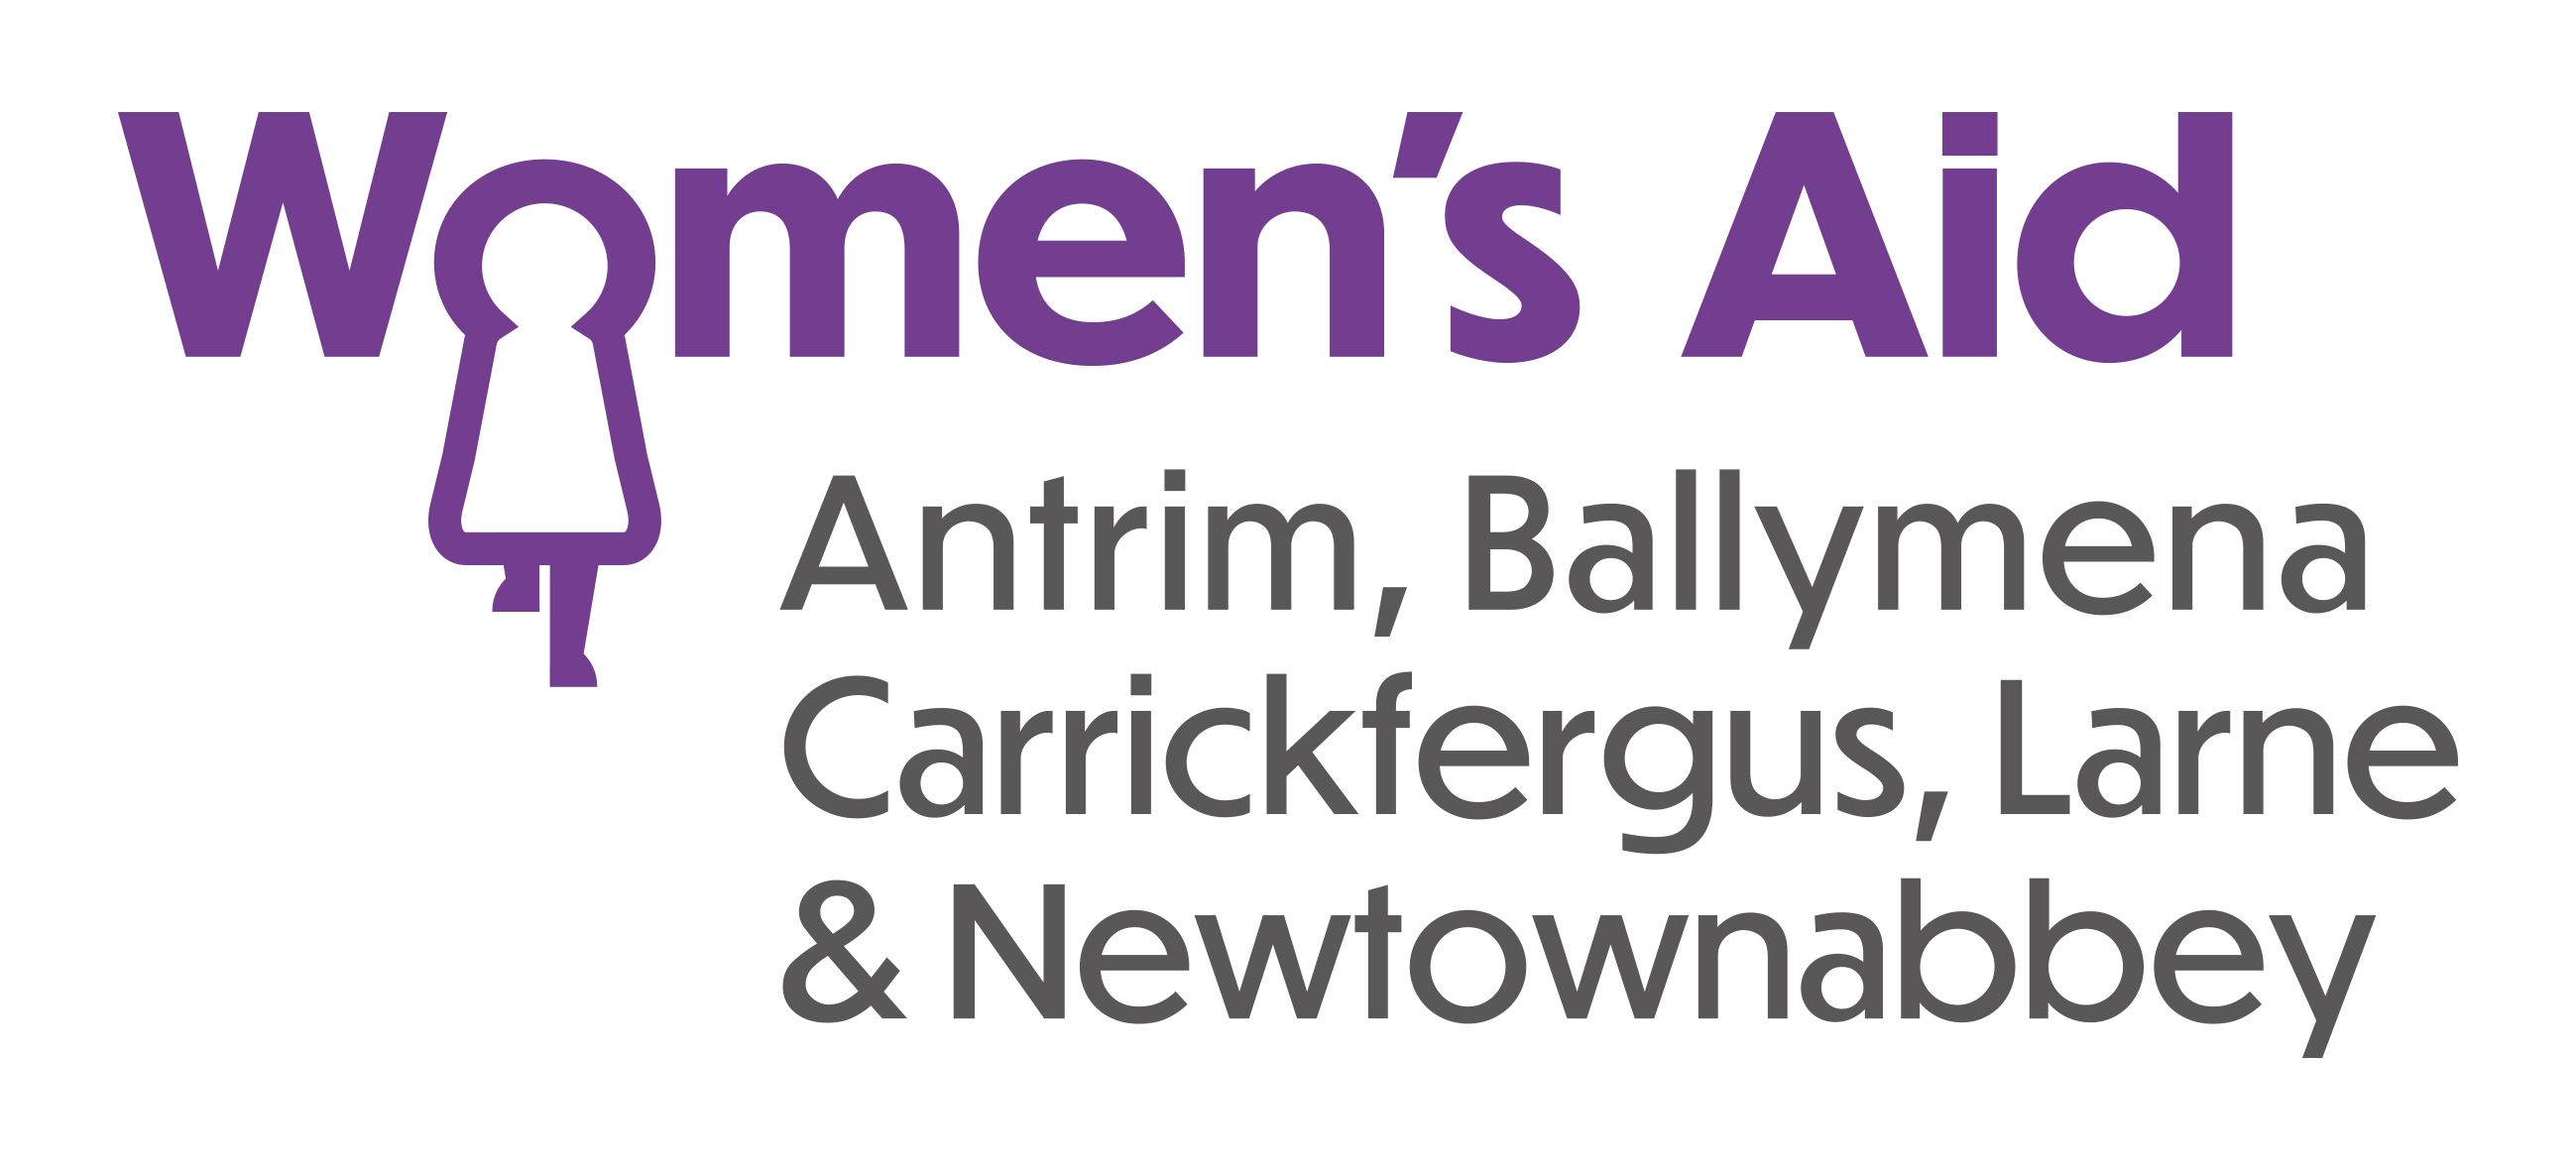 Women's Aid logo for Antrim, Ballymena, Carrickfergus, Larne and Newtownabbey